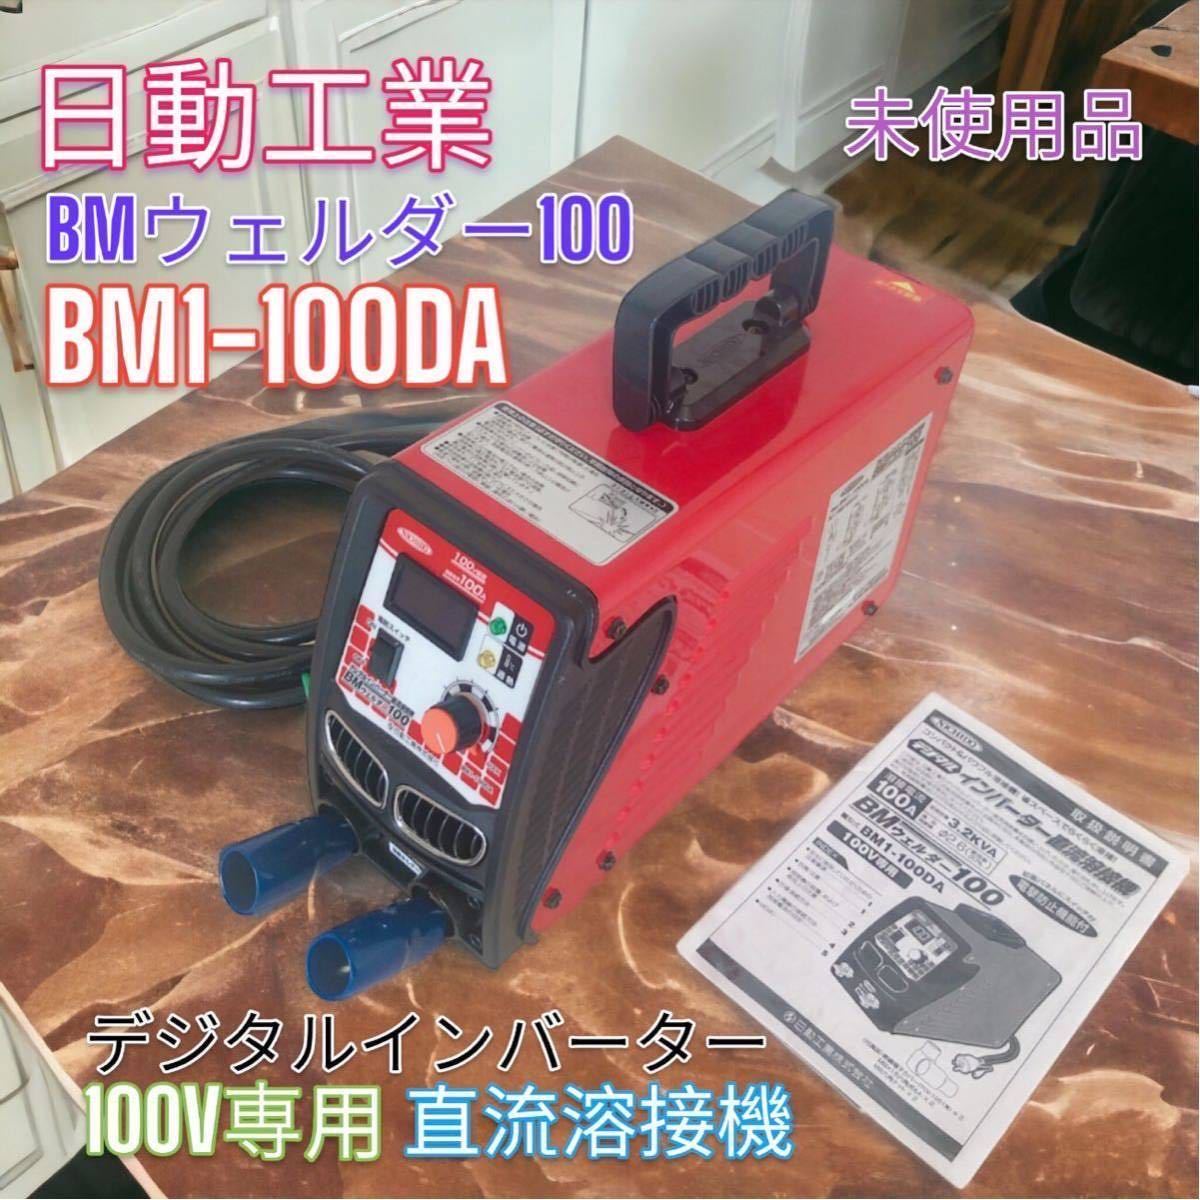 日動工業 BM1-100DA デジタルインバーター直流溶接機 100V | JChere